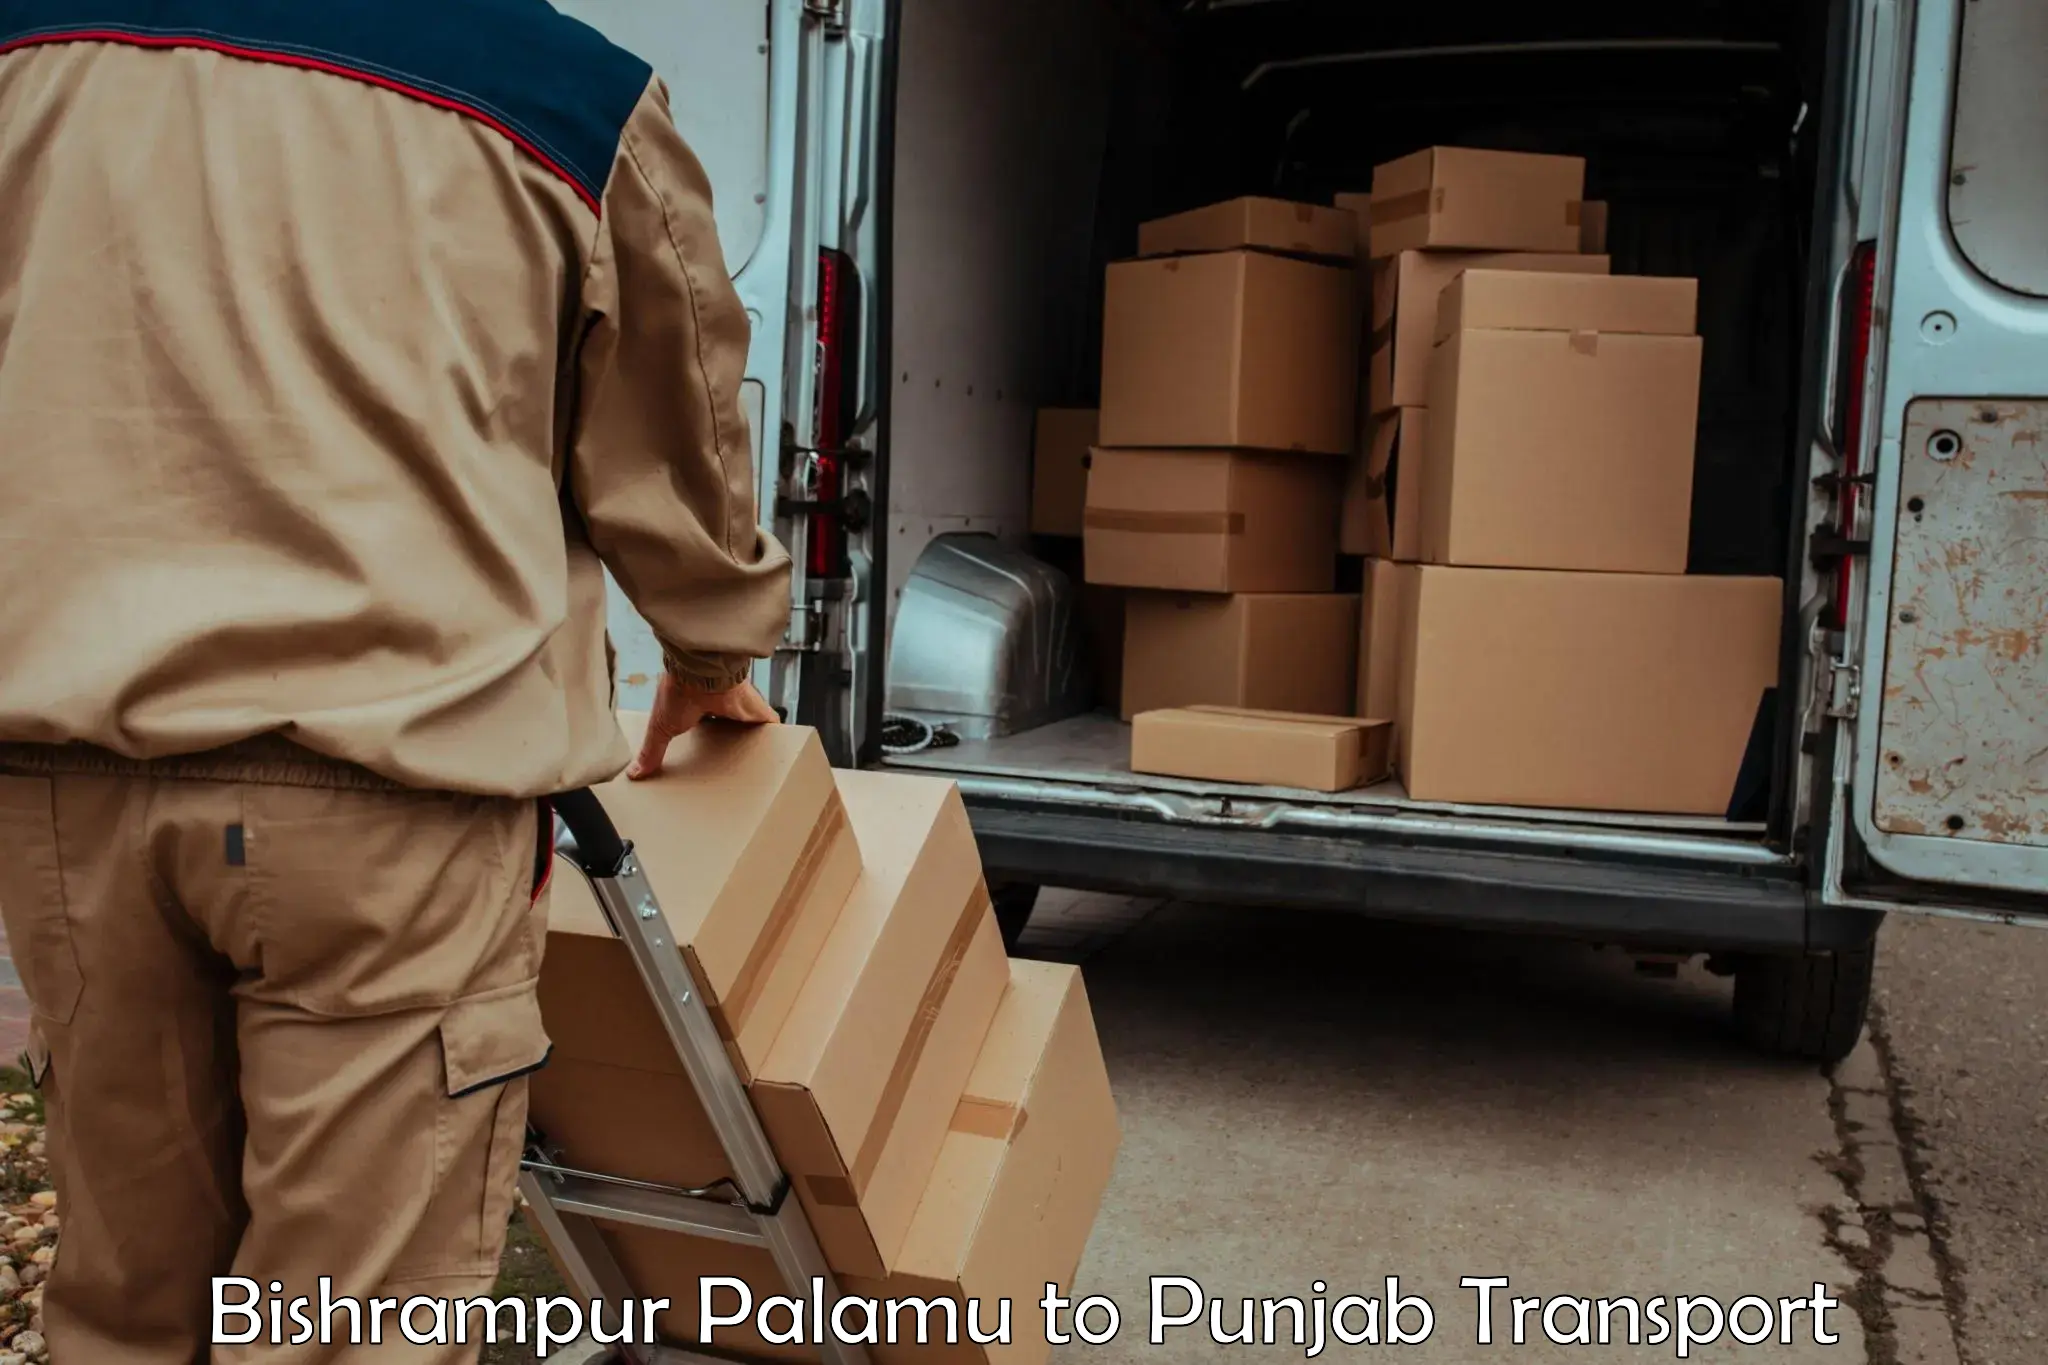 Two wheeler parcel service Bishrampur Palamu to Malout